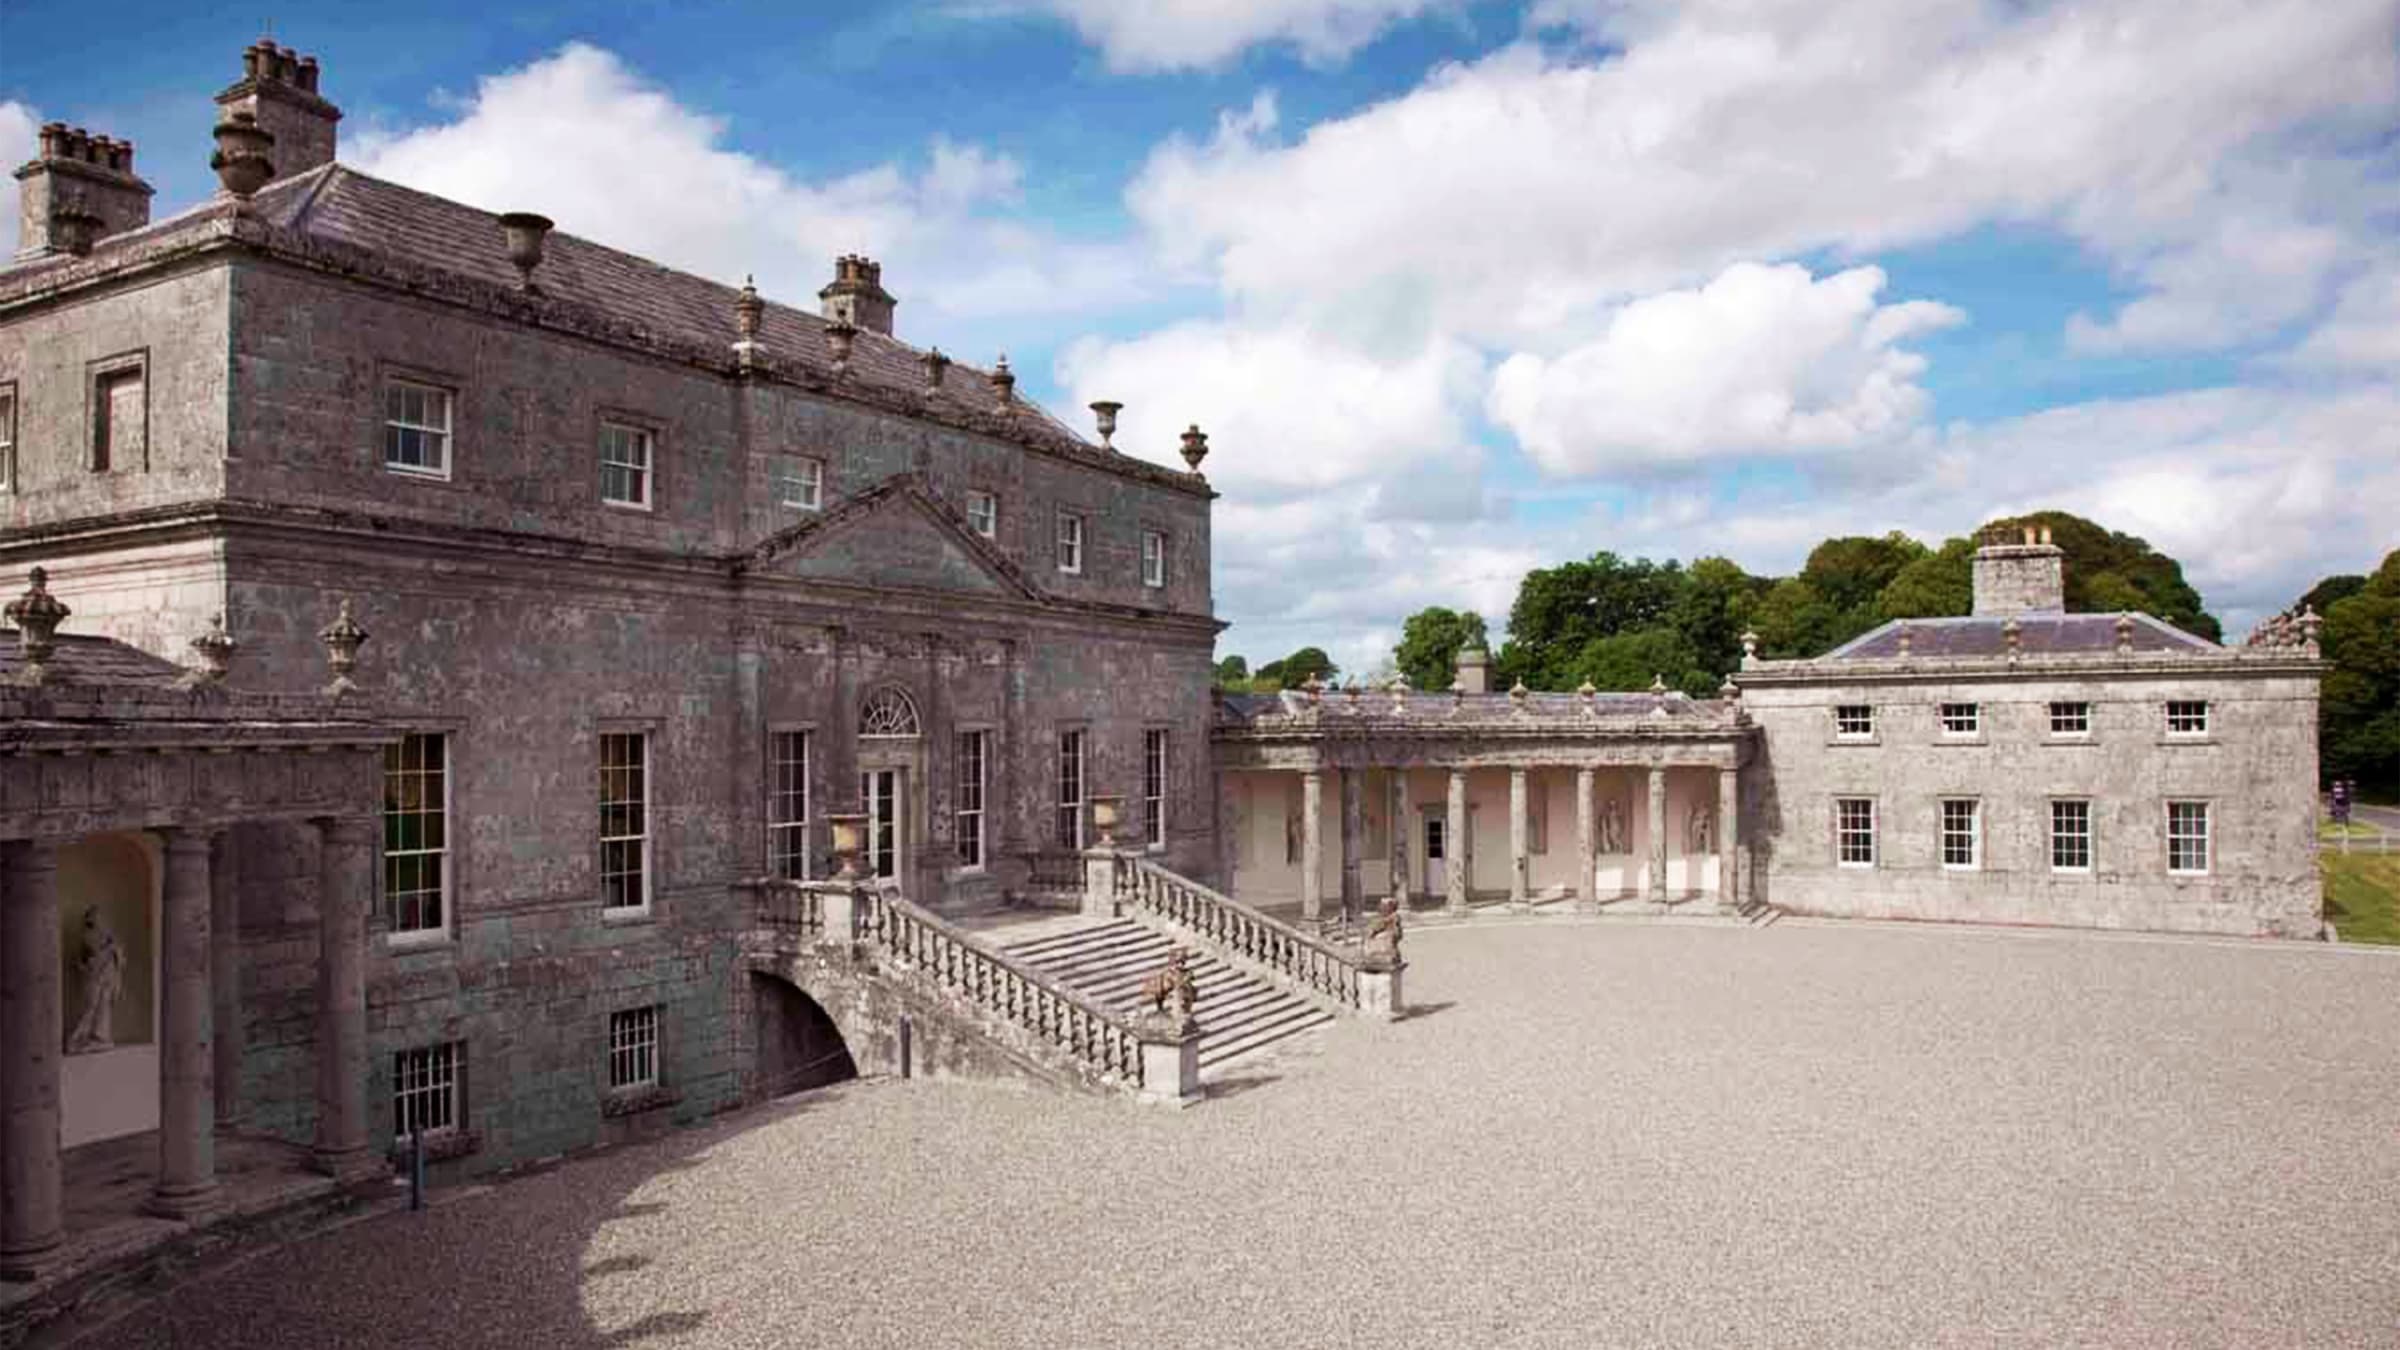 Why Art Thieves Love This Beautiful Irish Mansion